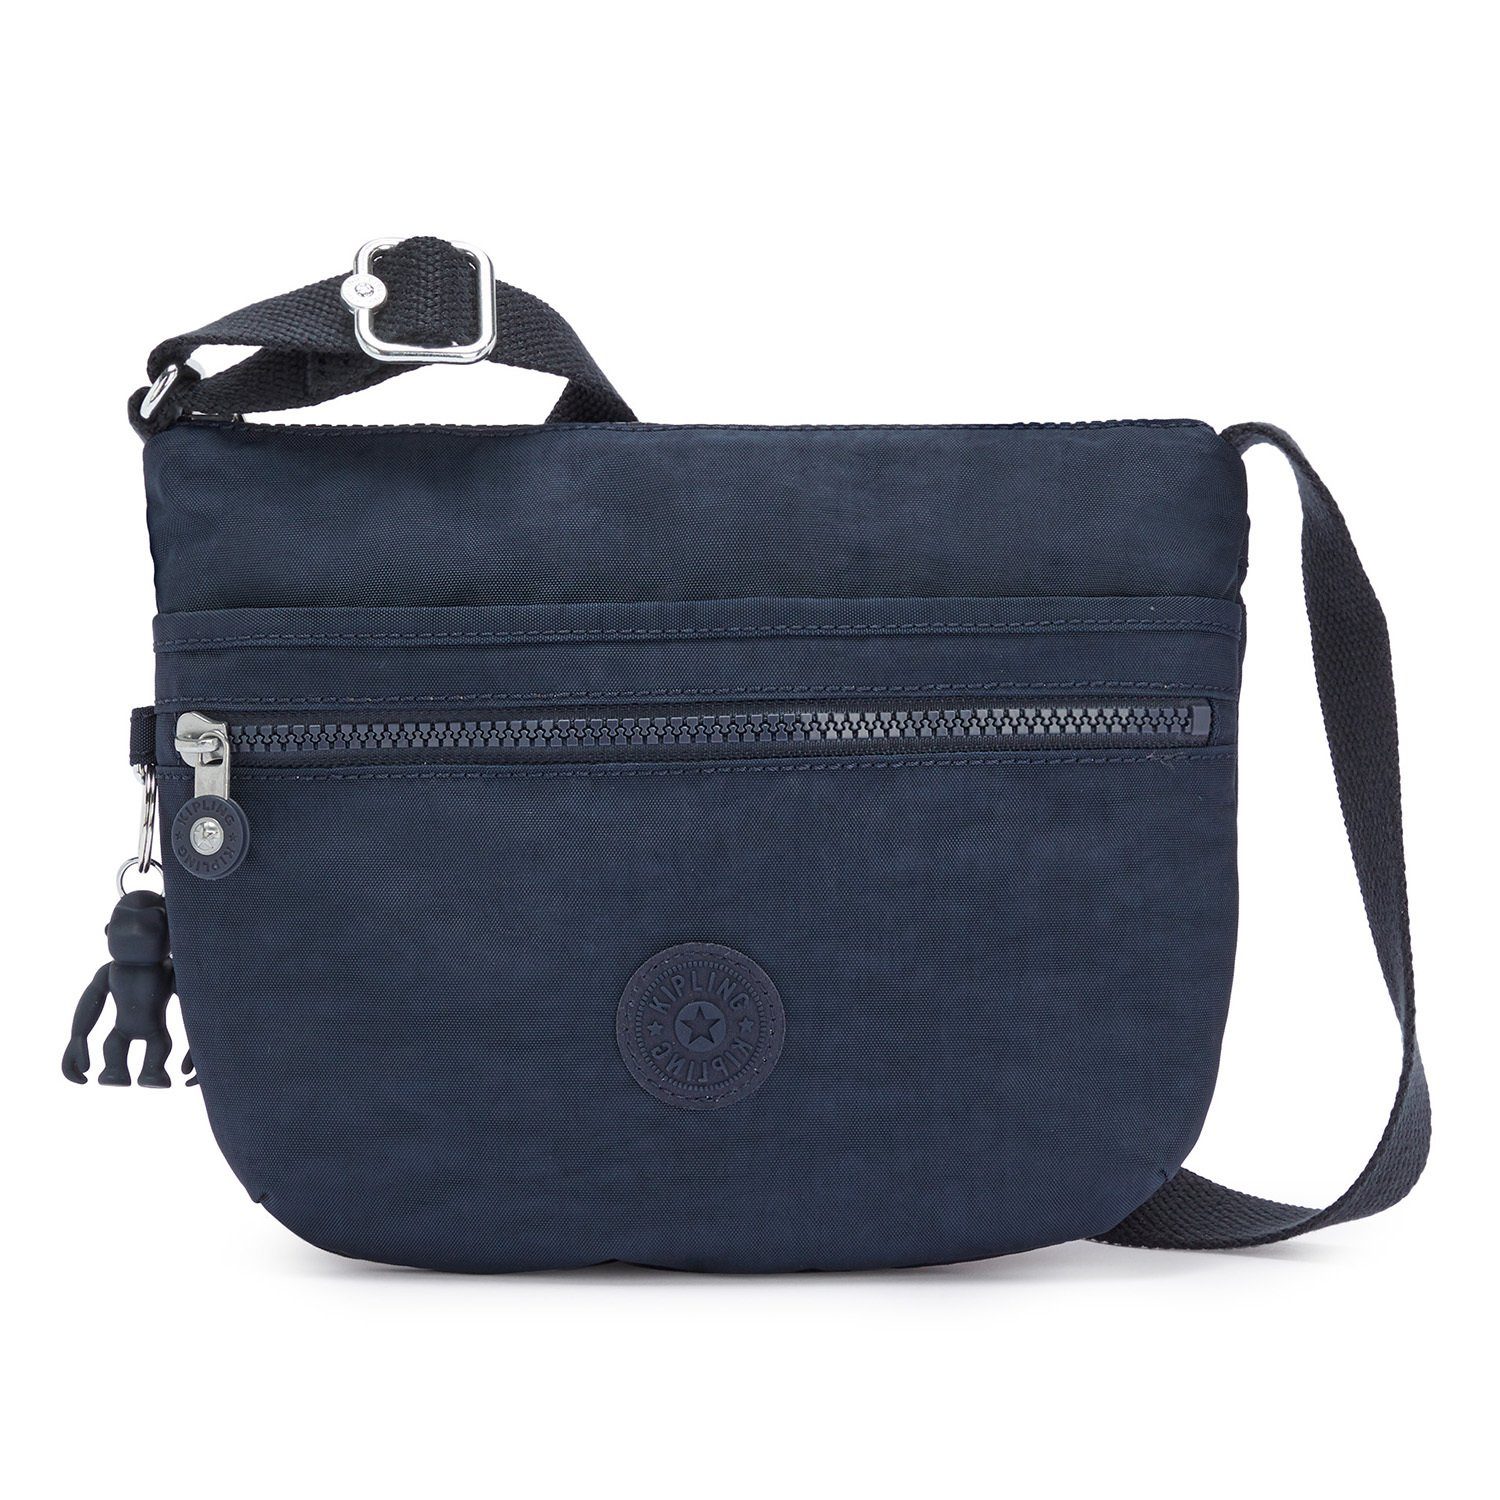 Kipling Taschen online kaufen | OTTO